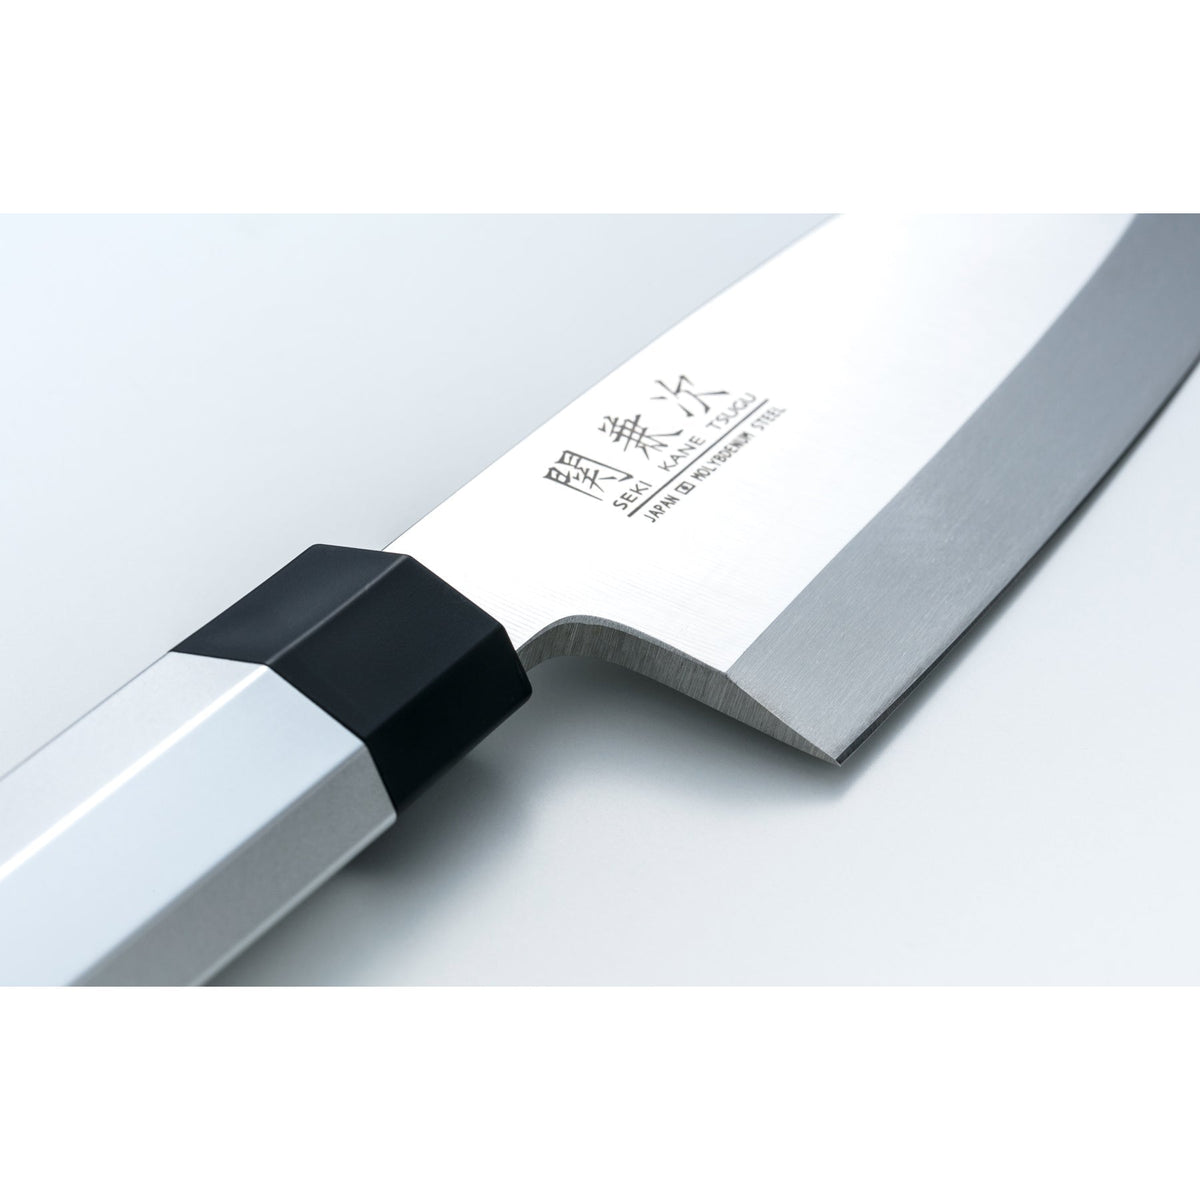 Sekikanetsugu Single Edged Japanese Deba Knife with Aluminum